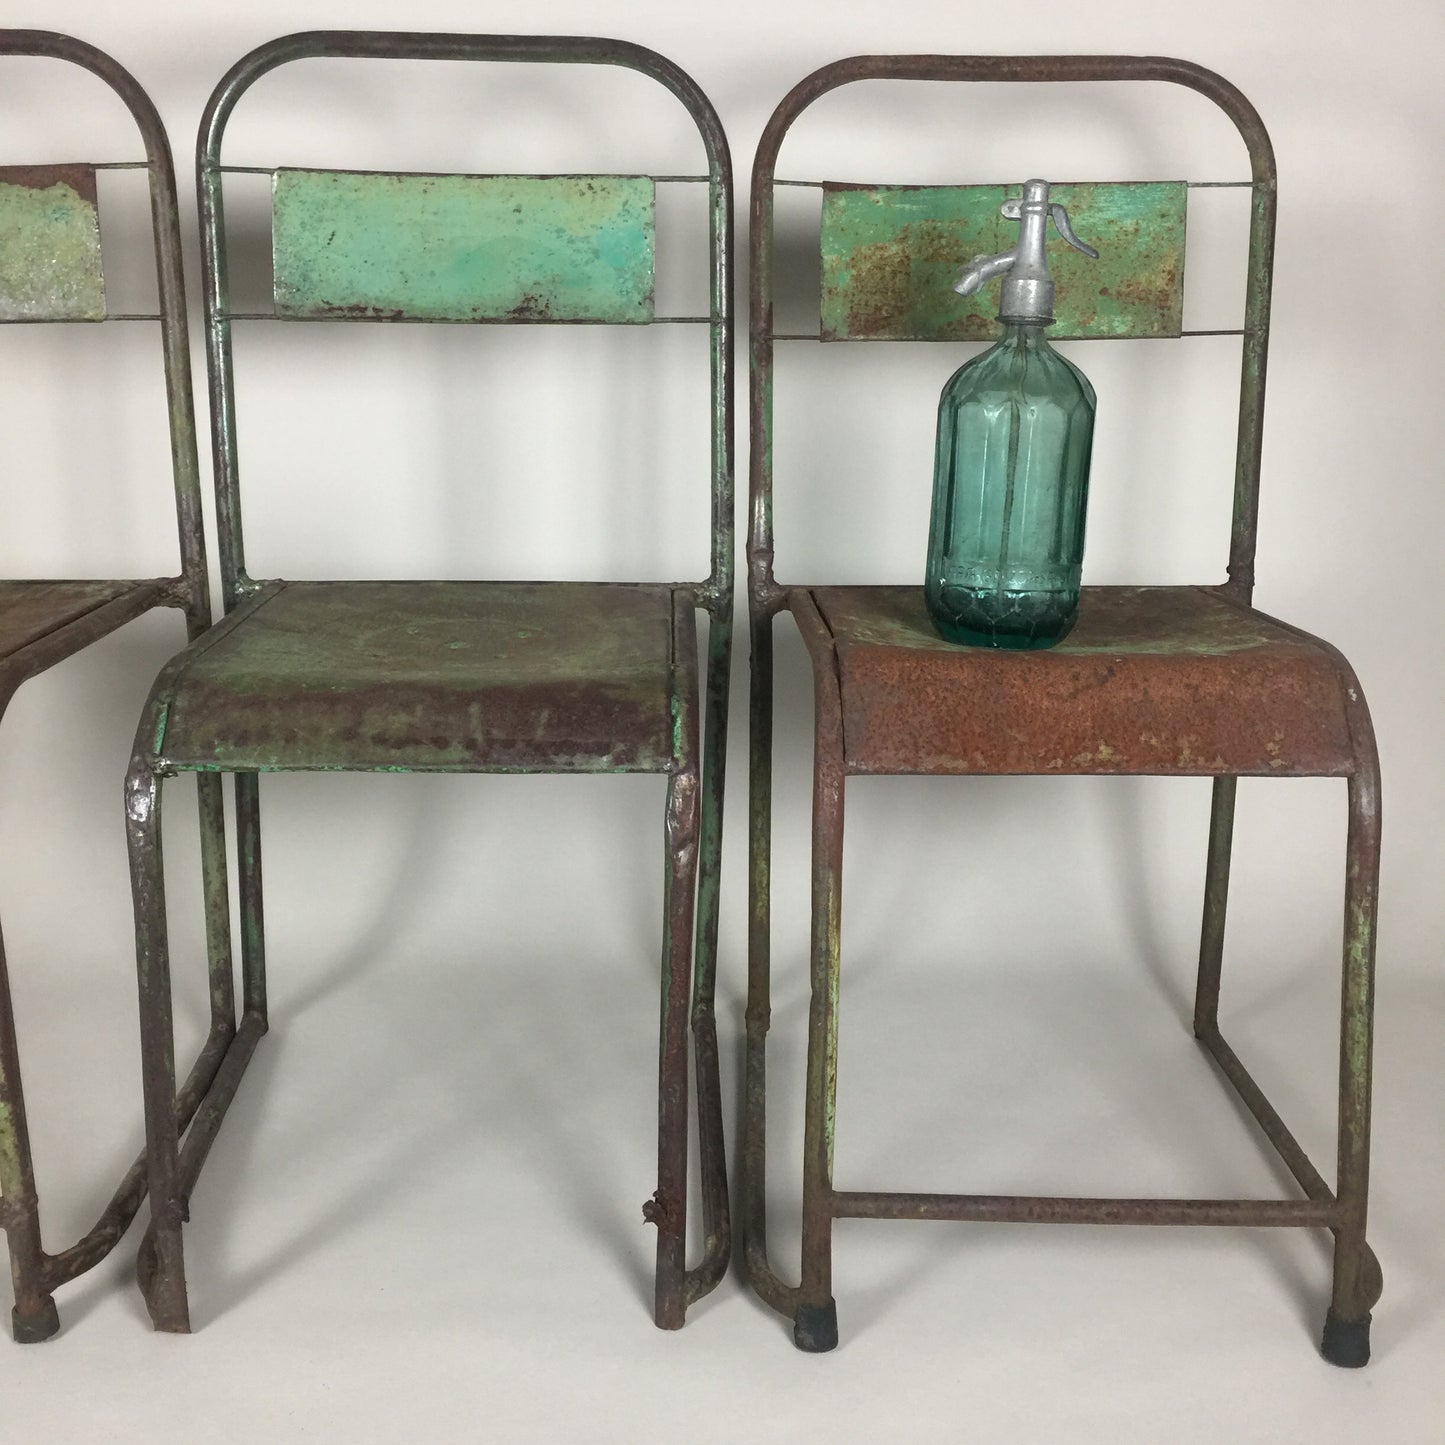 Dekorativa franska stolar (3 stycken säljs tillsammans)